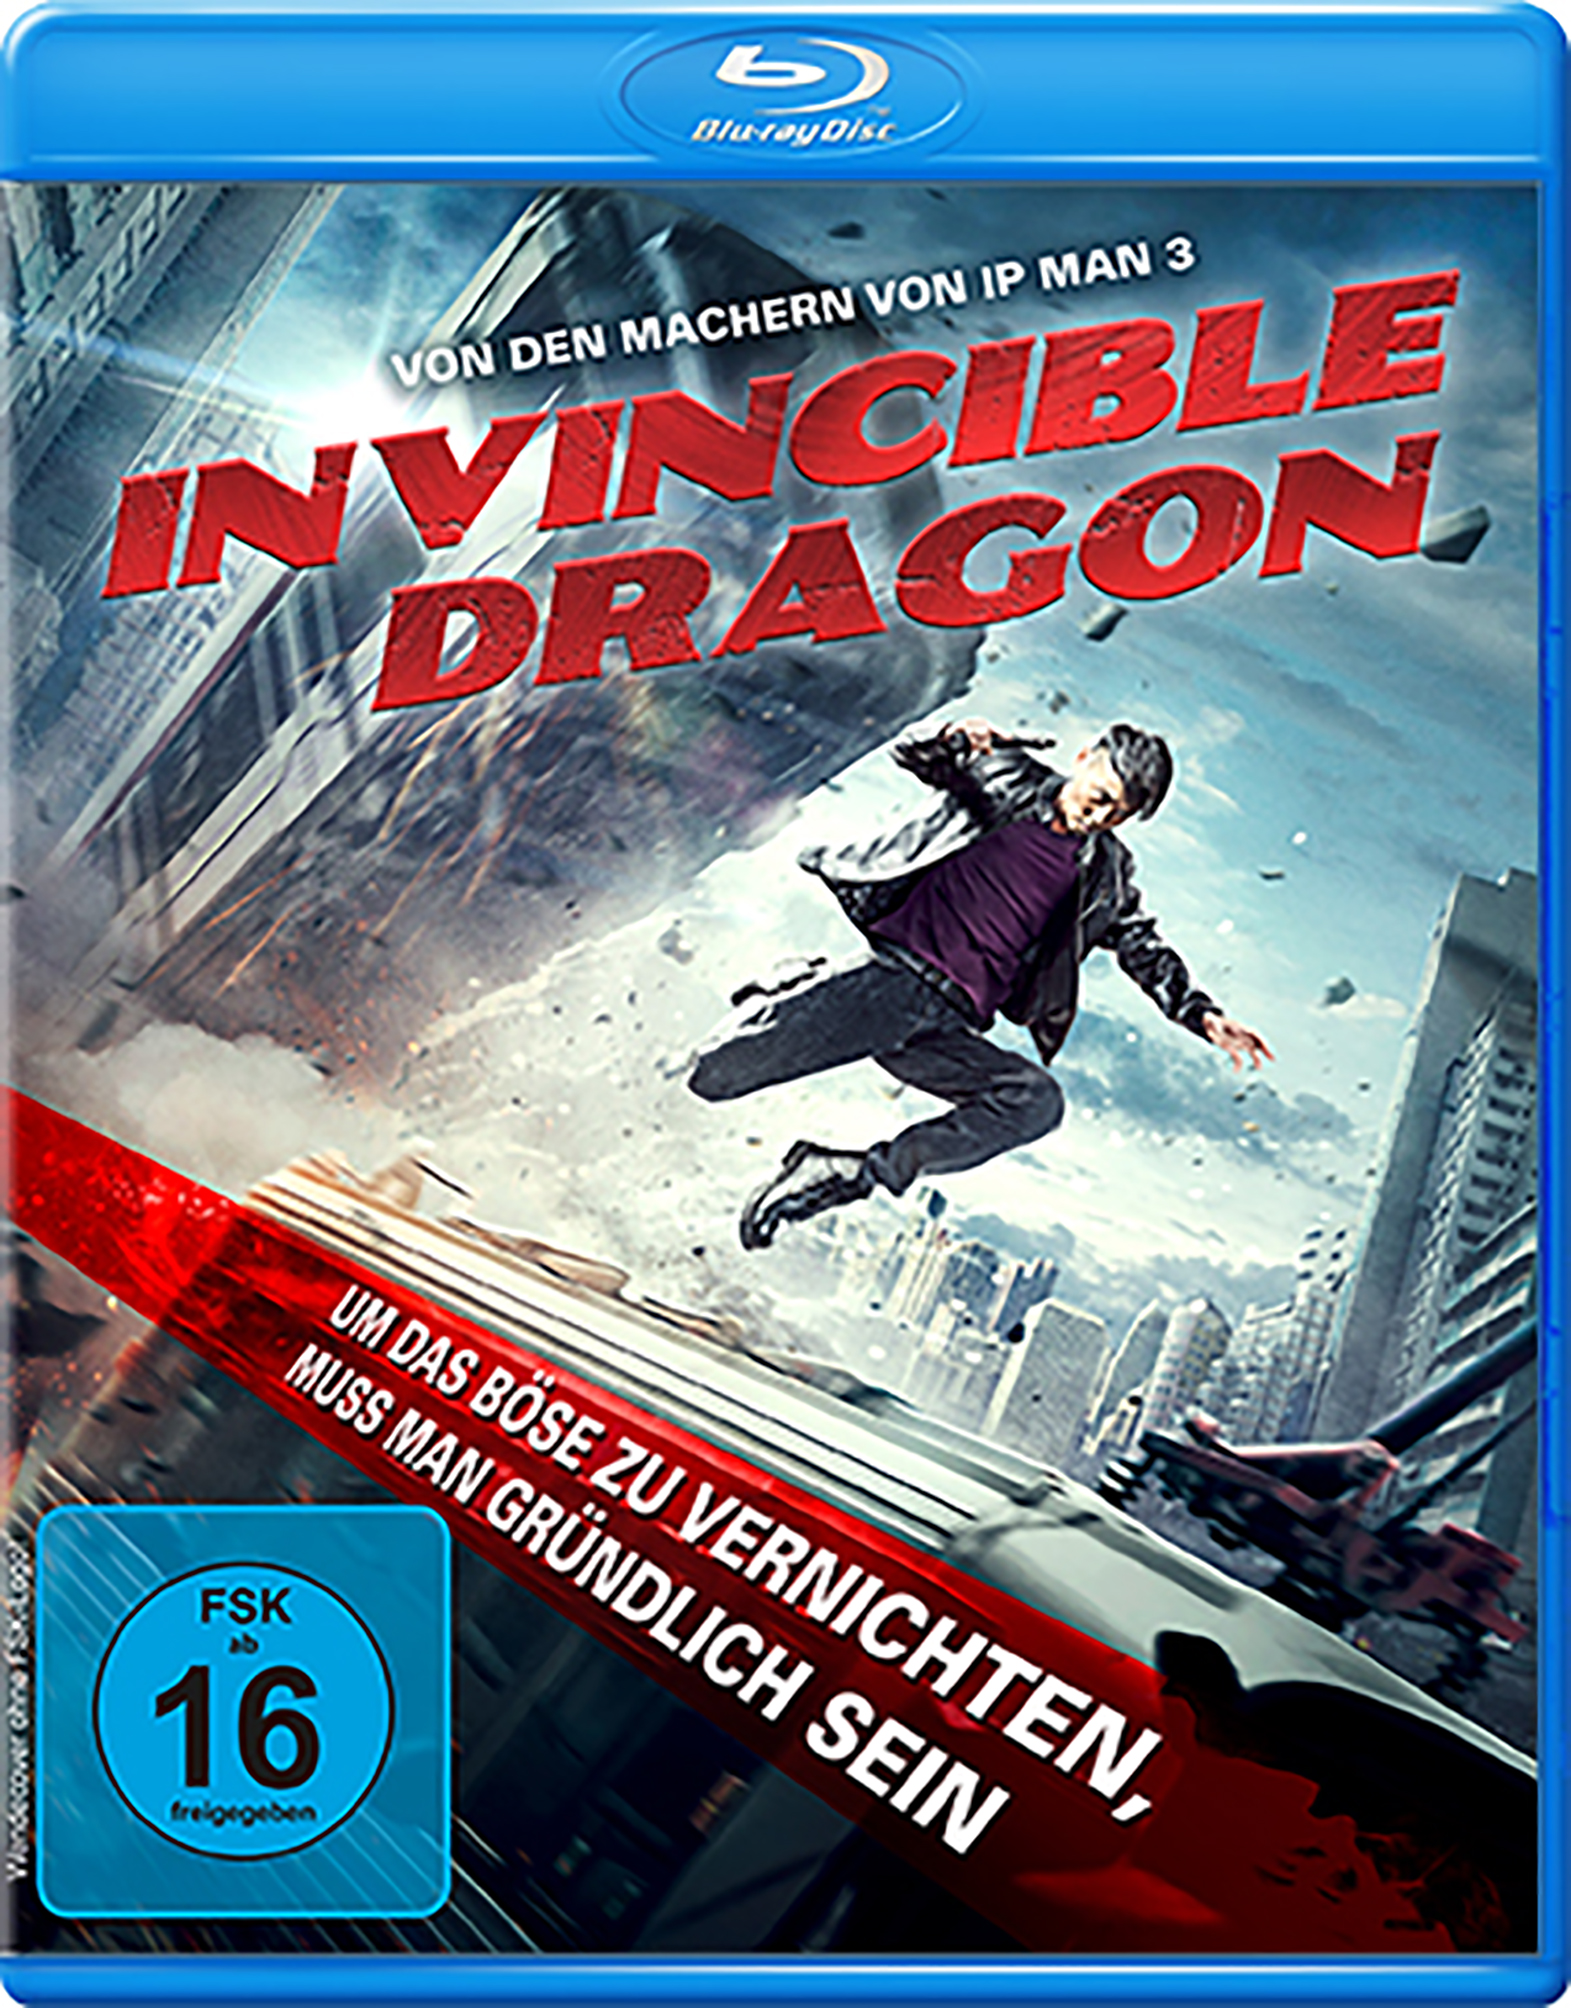 Invincible Dragon (Blu-ray)  Cover